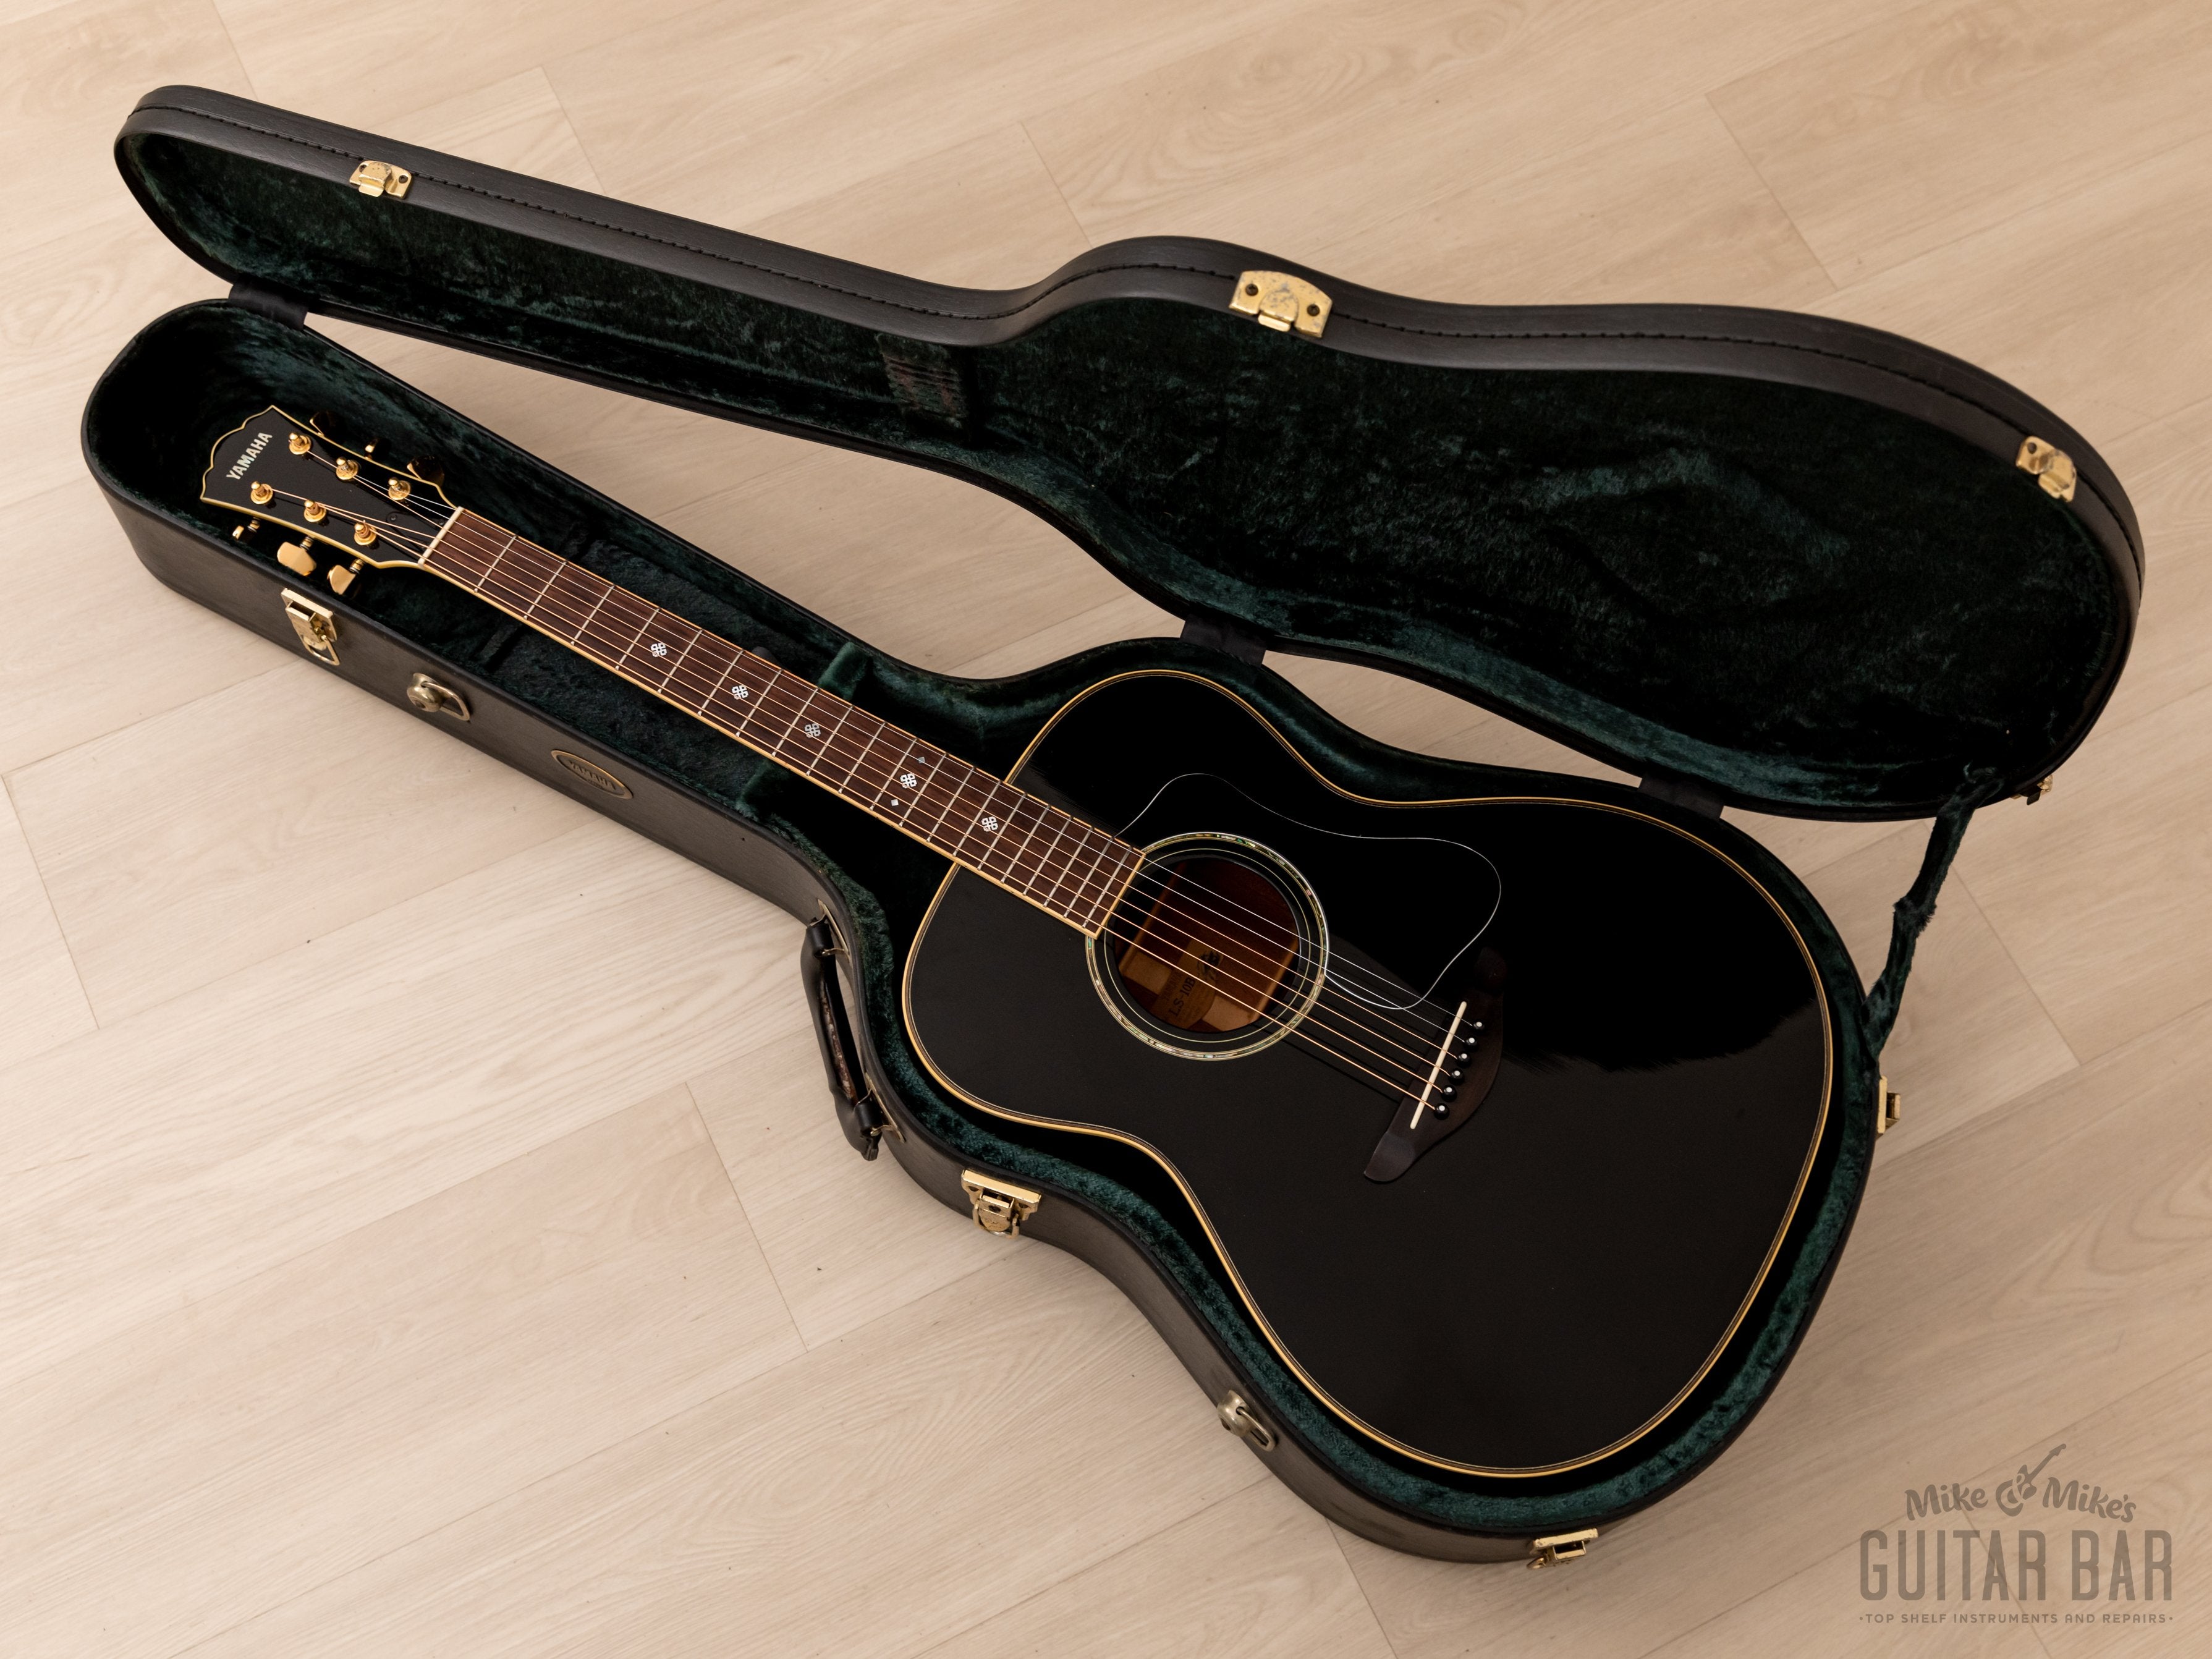 2000 Yamaha LS-10BL Acoustic Guitar Black w/ Case, Japan